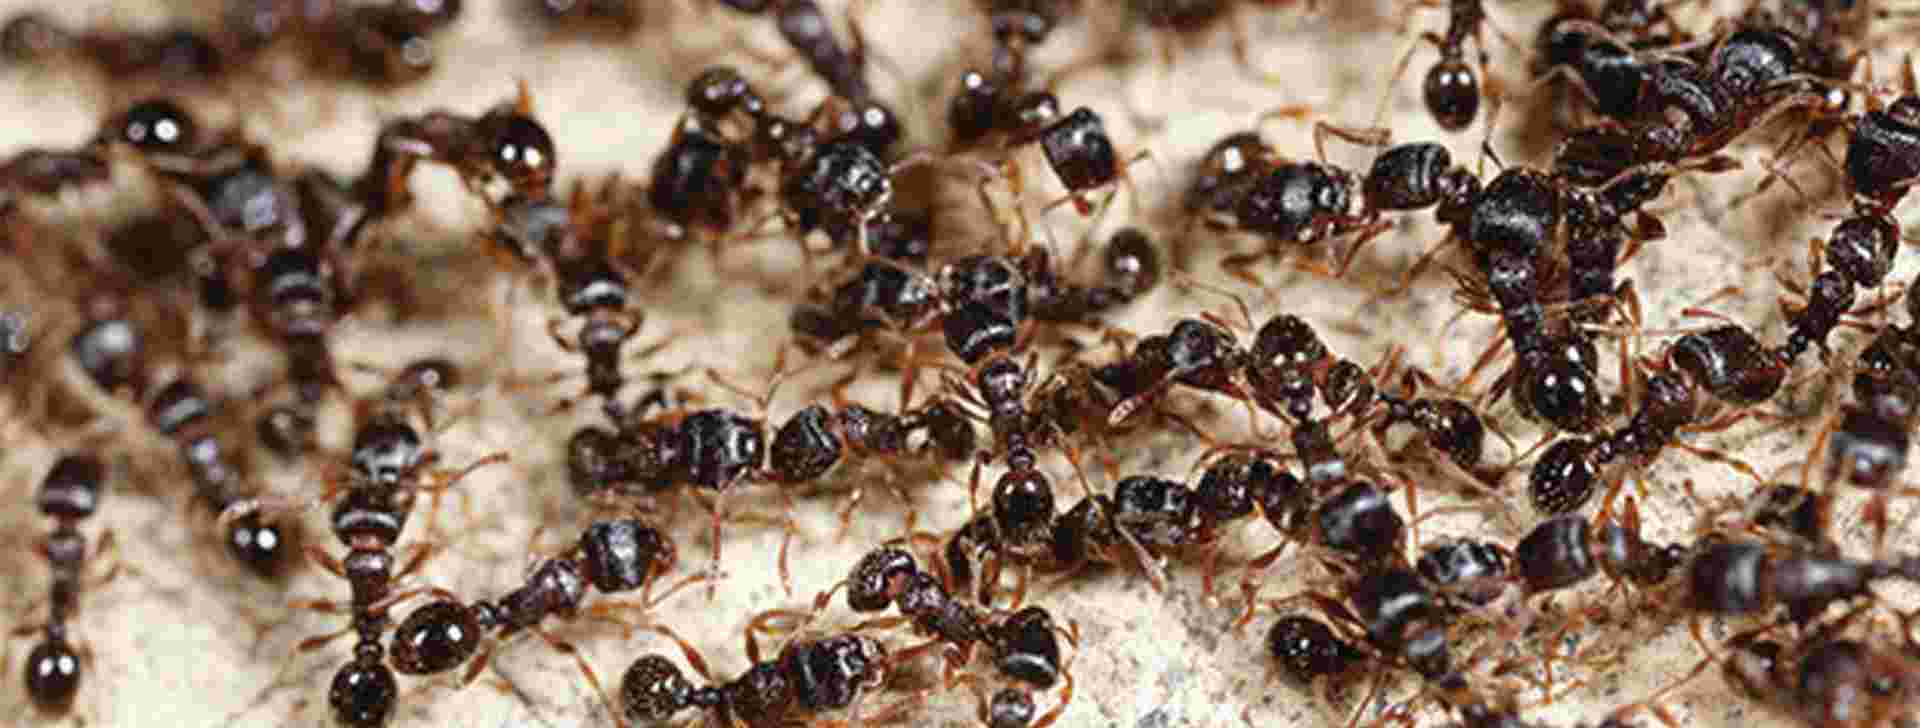 Comment lutter contre les fourmis ?